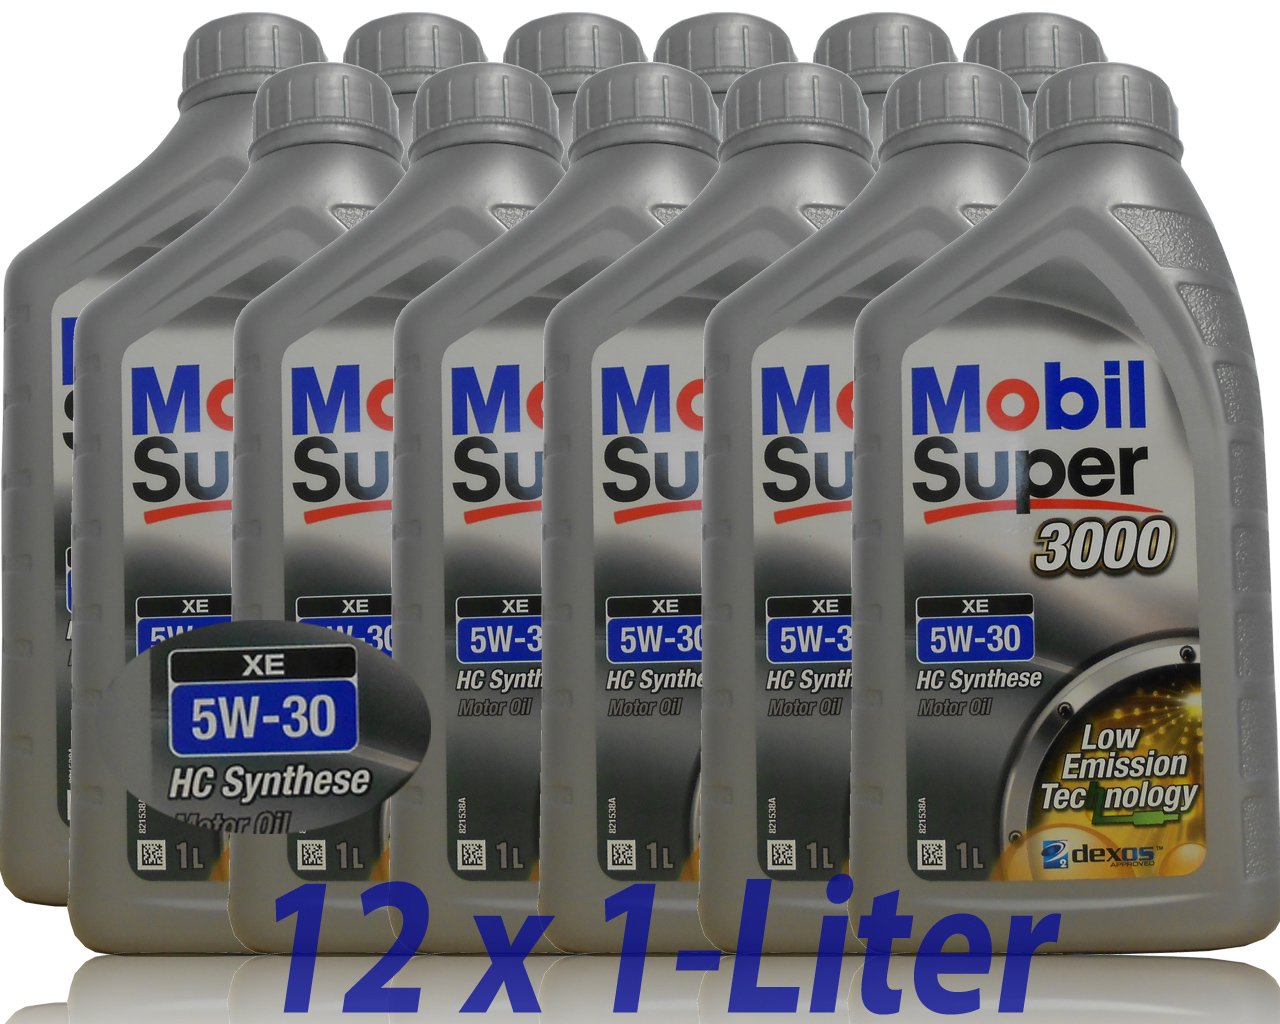 12x1 Liter Mobil Super 3000 XE 5W-30 Motoröl Motorenöl 5W30 von Mobil